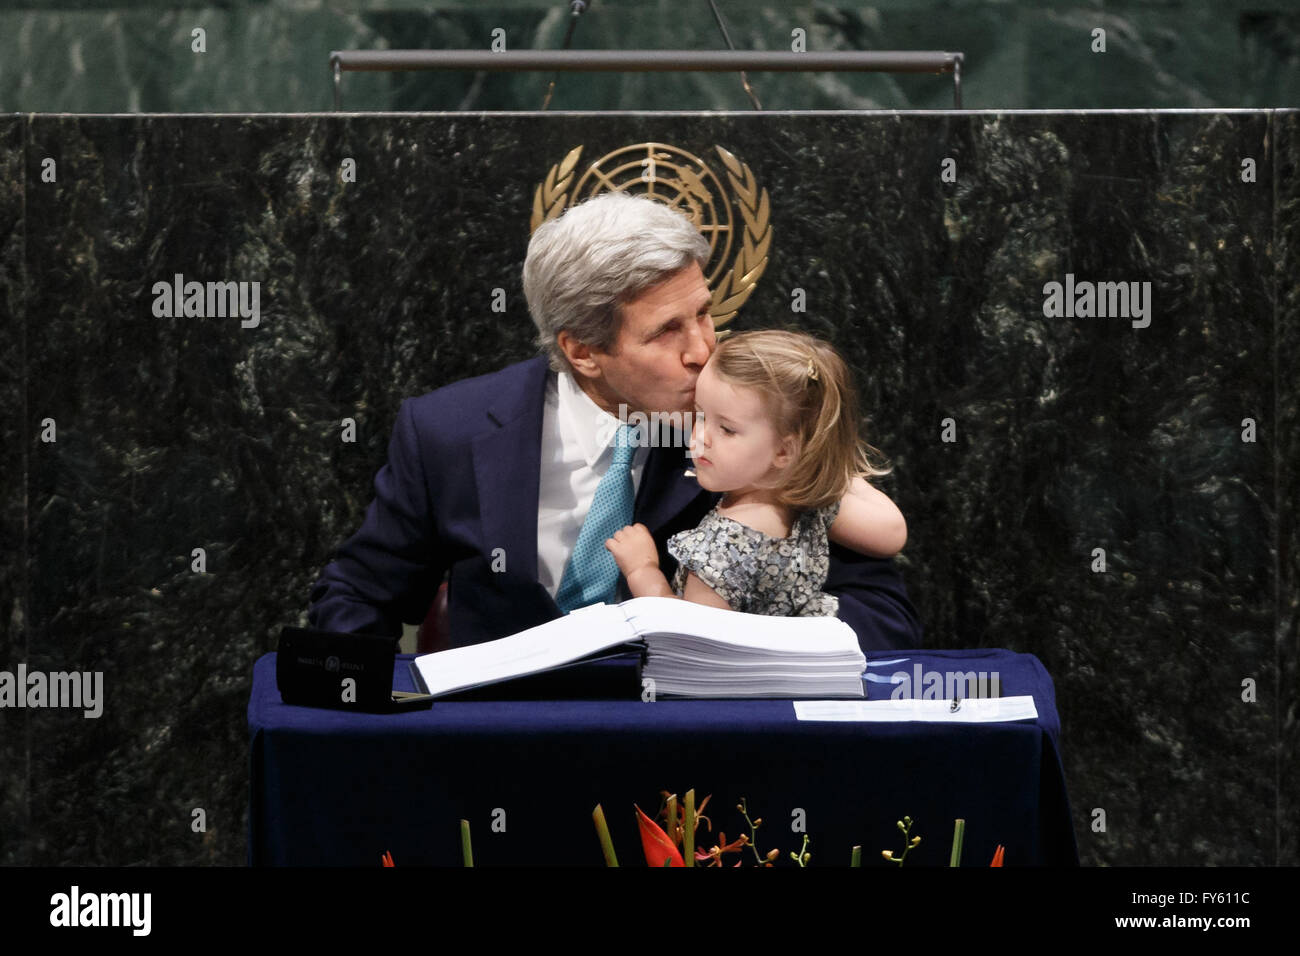 Organización de las Naciones Unidas. 22 abr, 2016. La Secretaria de Estado de los Estados Unidos John Kerry besa a su nieta después de haber firmado el acuerdo climático de París, en la sede de las Naciones Unidas en Nueva York, 22 de abril de 2016. El París histórico pacto climático abrió para firmas por los líderes de 171 países el viernes por la mañana, marcó el primer paso hacia la entrada en vigor del Pacto. Crédito: Li Muzi/Xinhua/Alamy Live News Foto de stock